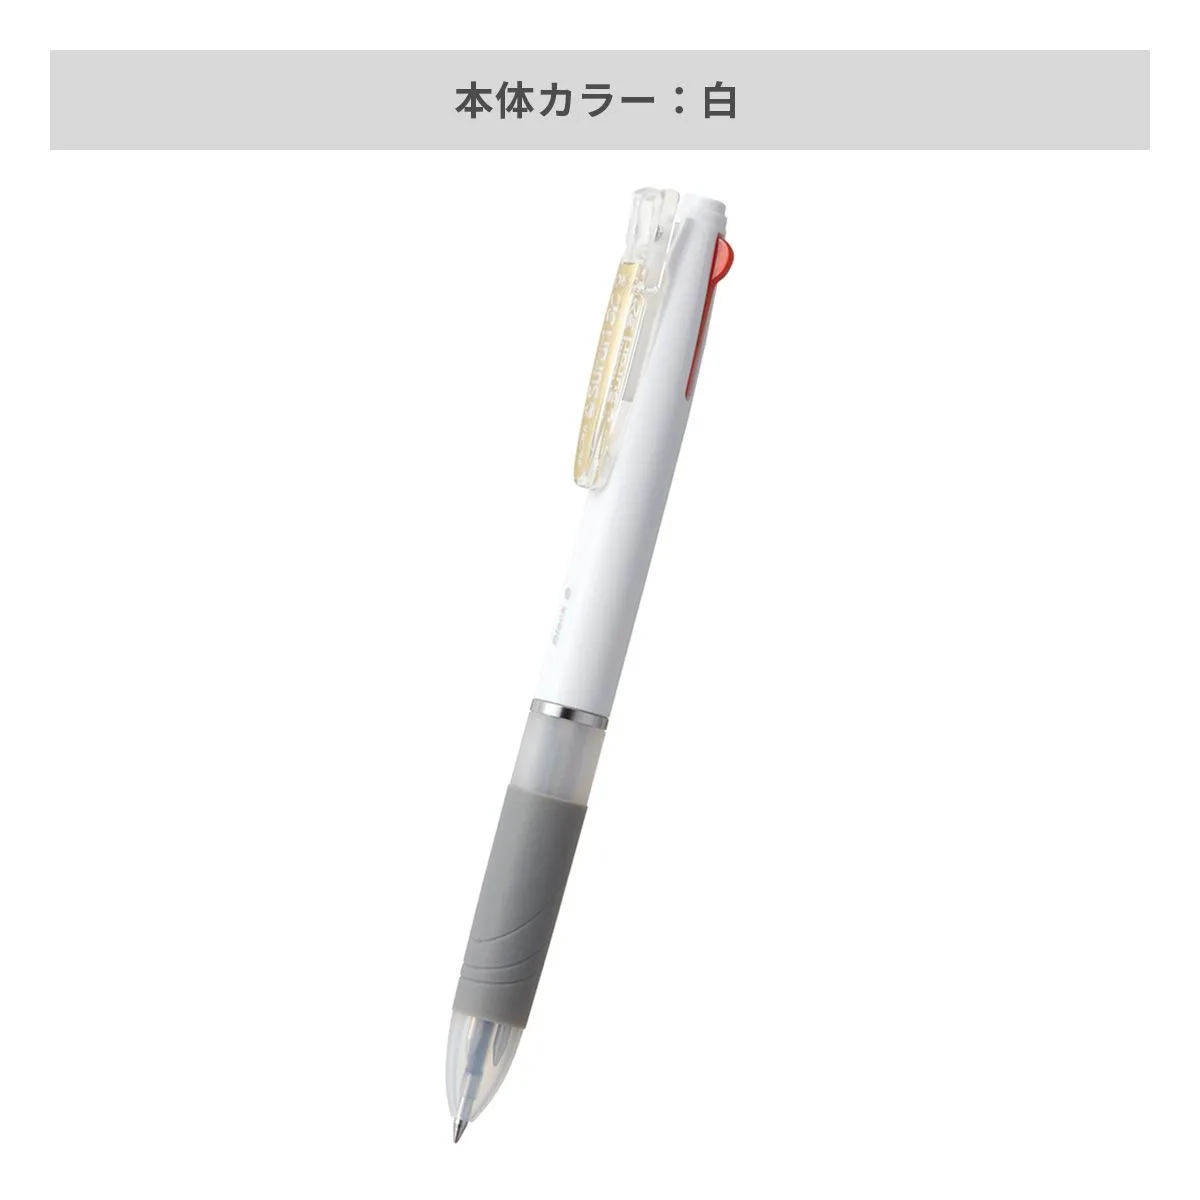 ゼブラ スラリ 3色ボールペン ホワイト軸 0.5mm【名入れボールペン / パッド印刷】 画像4